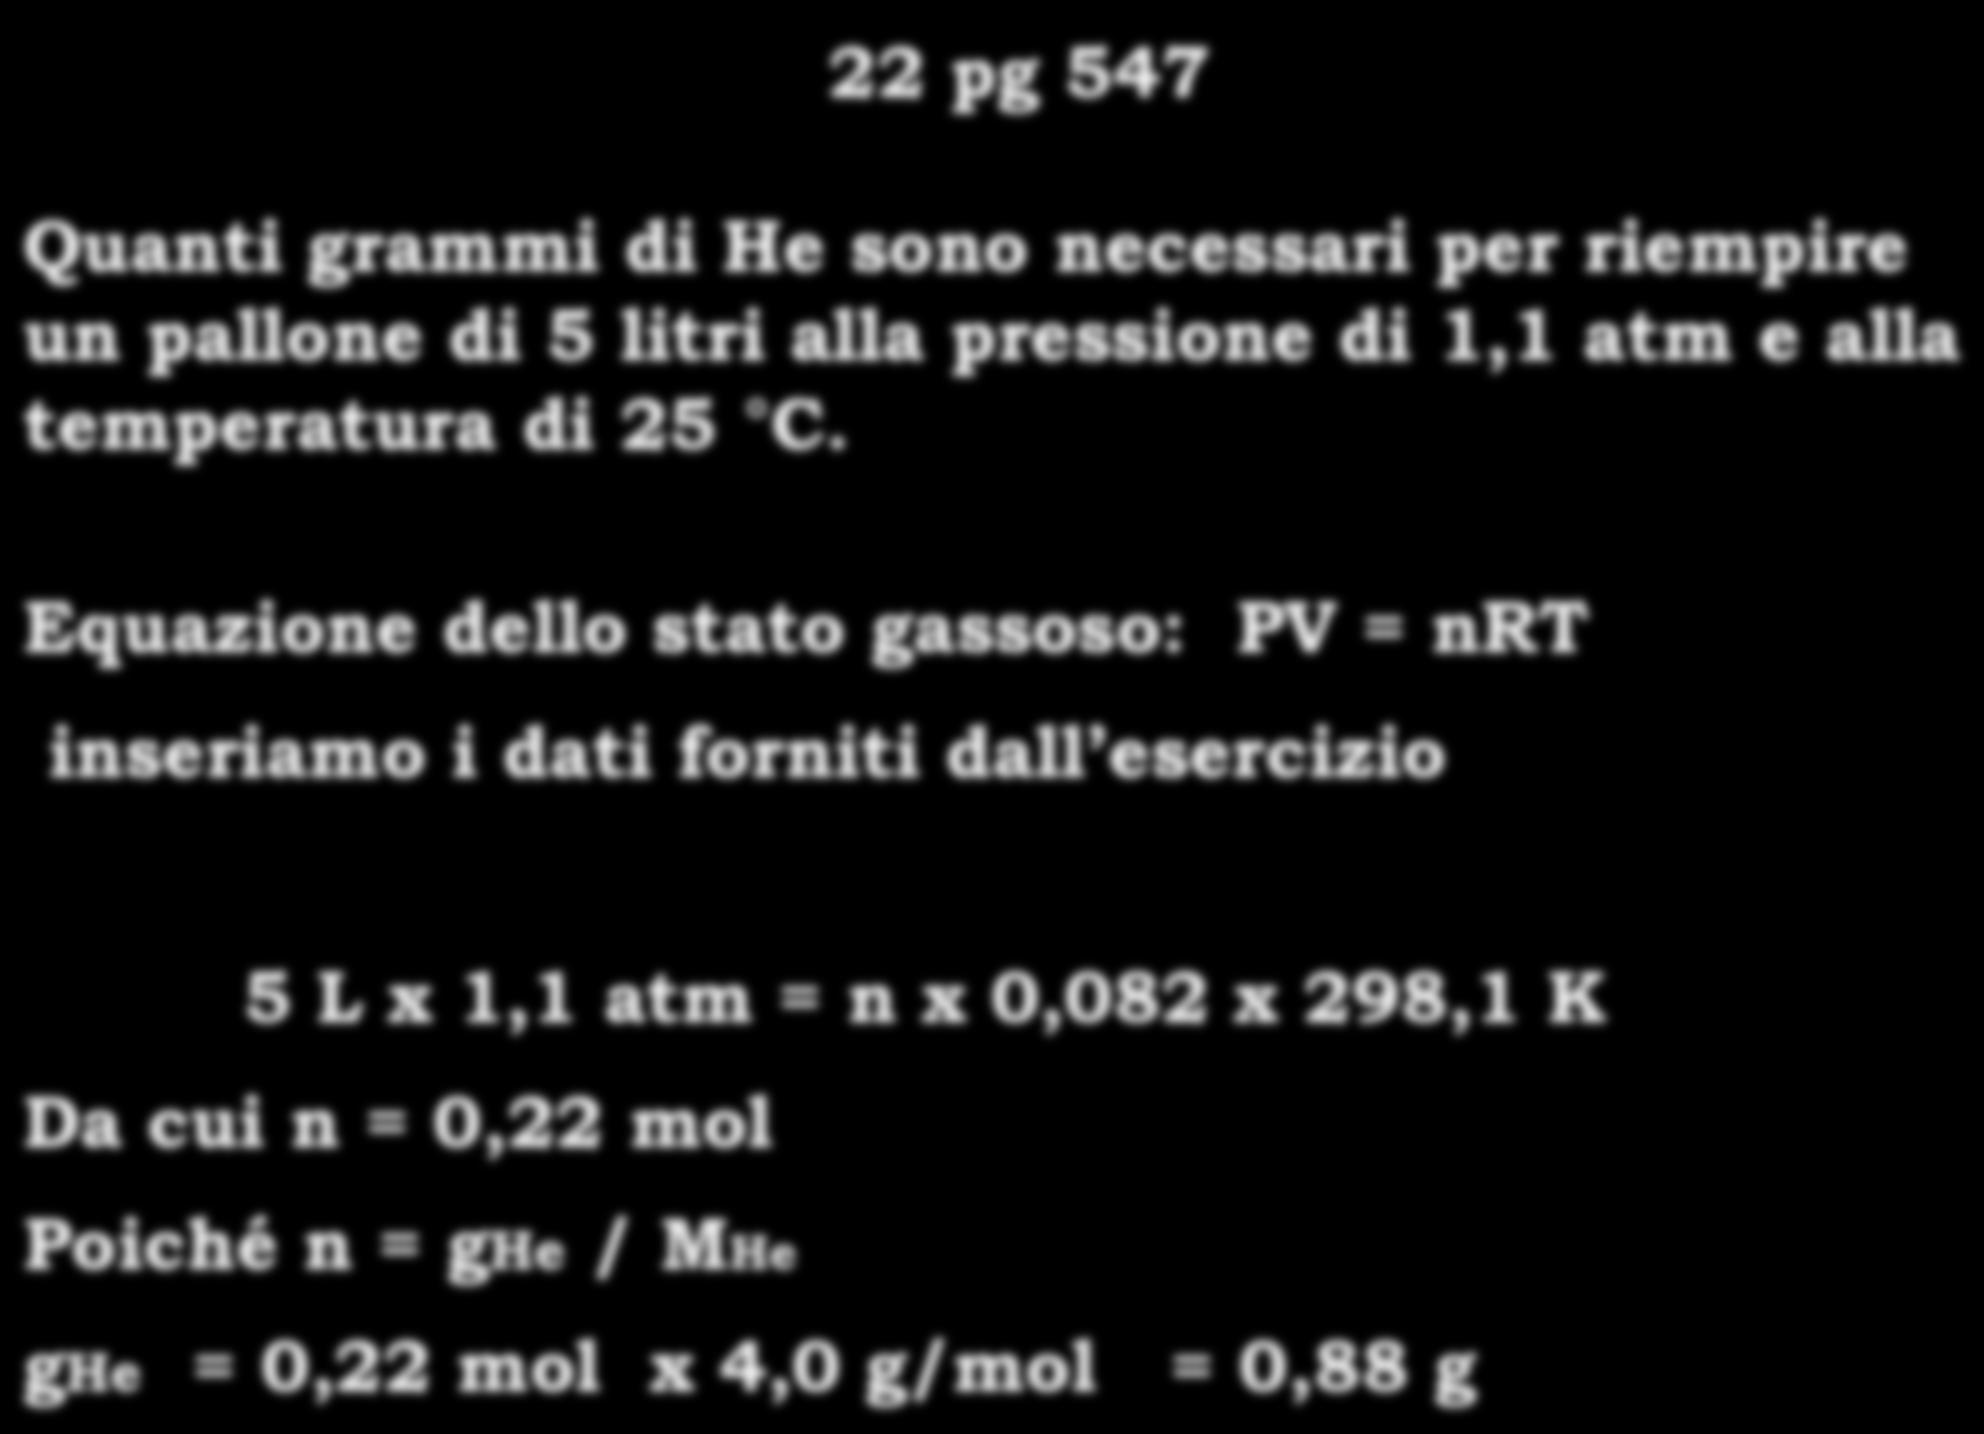 22 pg 547 26 Quanti grammi di He sono necessari per riempire un pallone di 5 litri alla pressione di 1,1 atm e alla temperatura di 25 C.